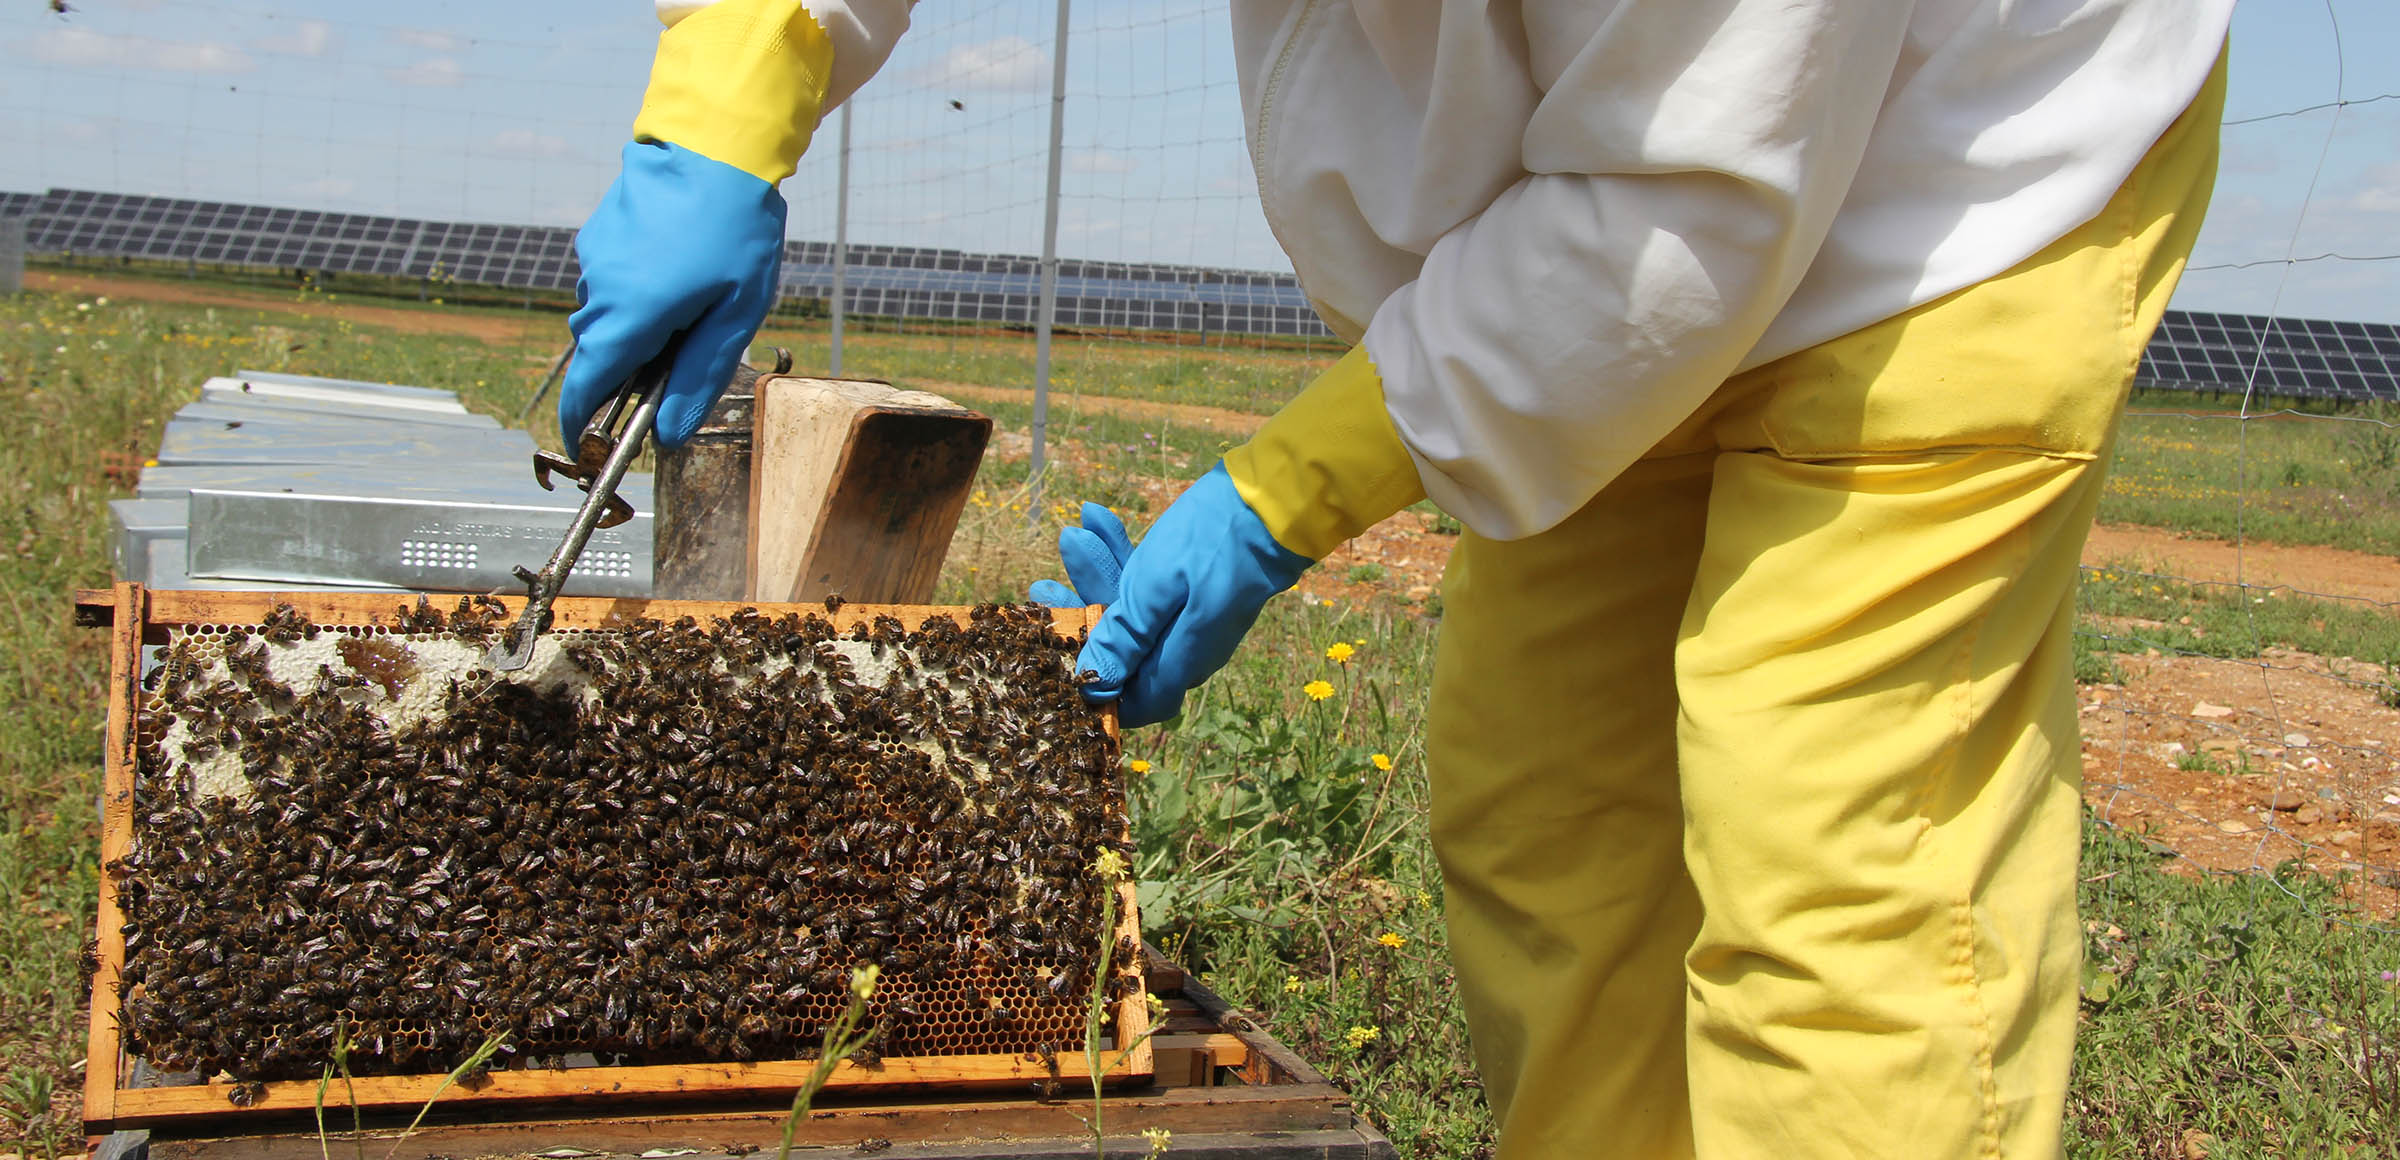 Sole e miele: l\u2019alveare fotovoltaico che aiuta le api